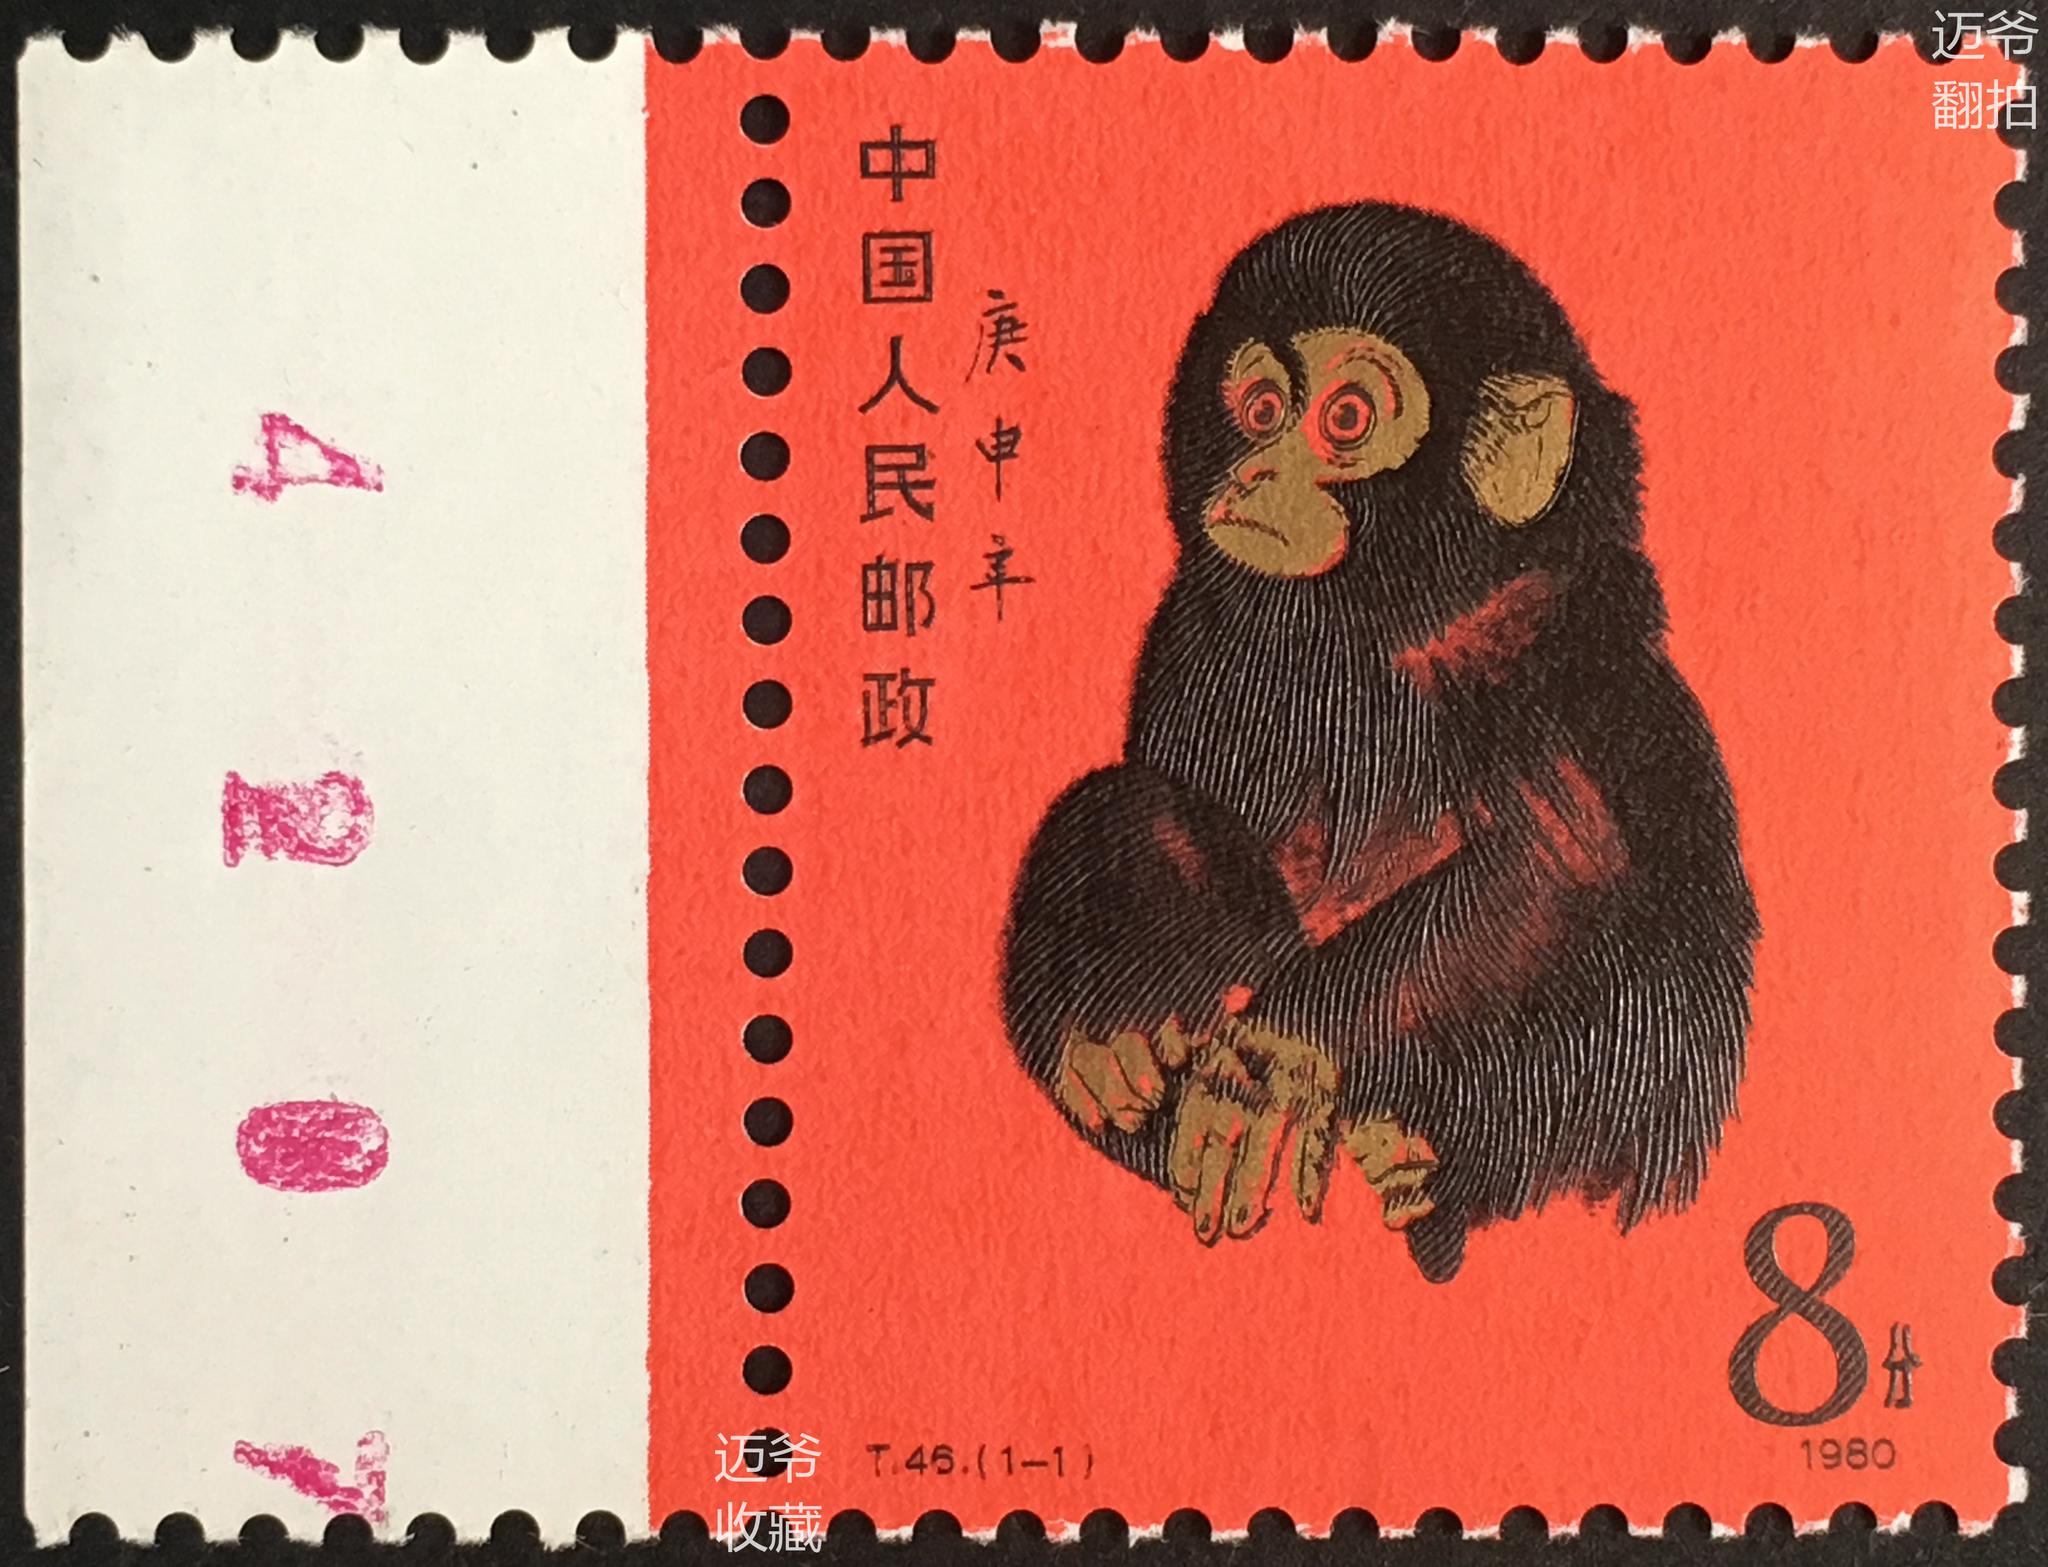 也就是俗称的"猴票 这套票由著名画家黄永玉绘制,著名邮票设计师